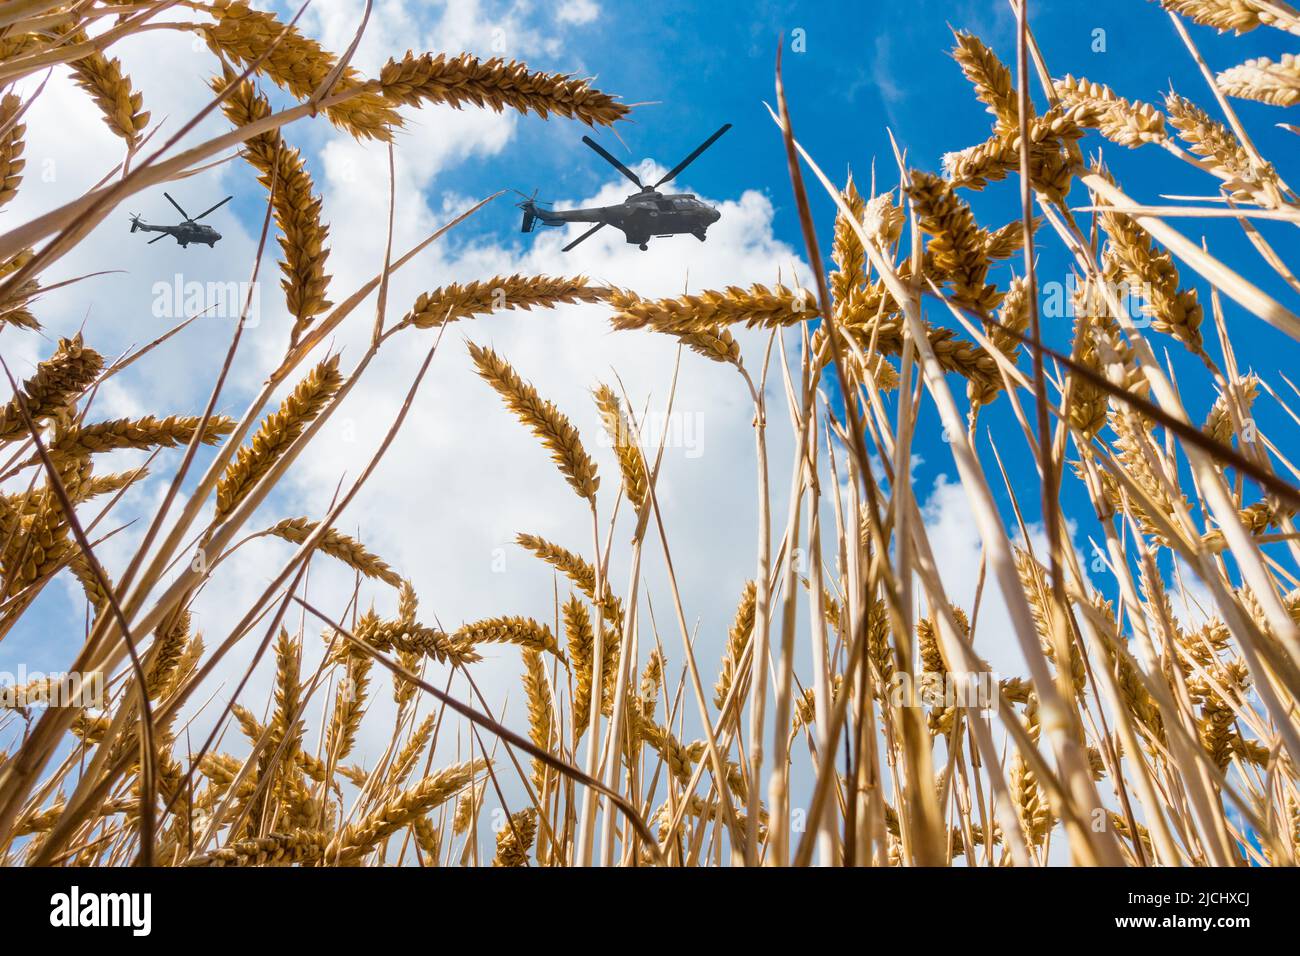 Hélicoptères militaires survolant un champ de blé. Image conceptuelle : Ukraine Russie conflit, guerre, blé, pénurie alimentaire mondiale, sanctions russes... Banque D'Images